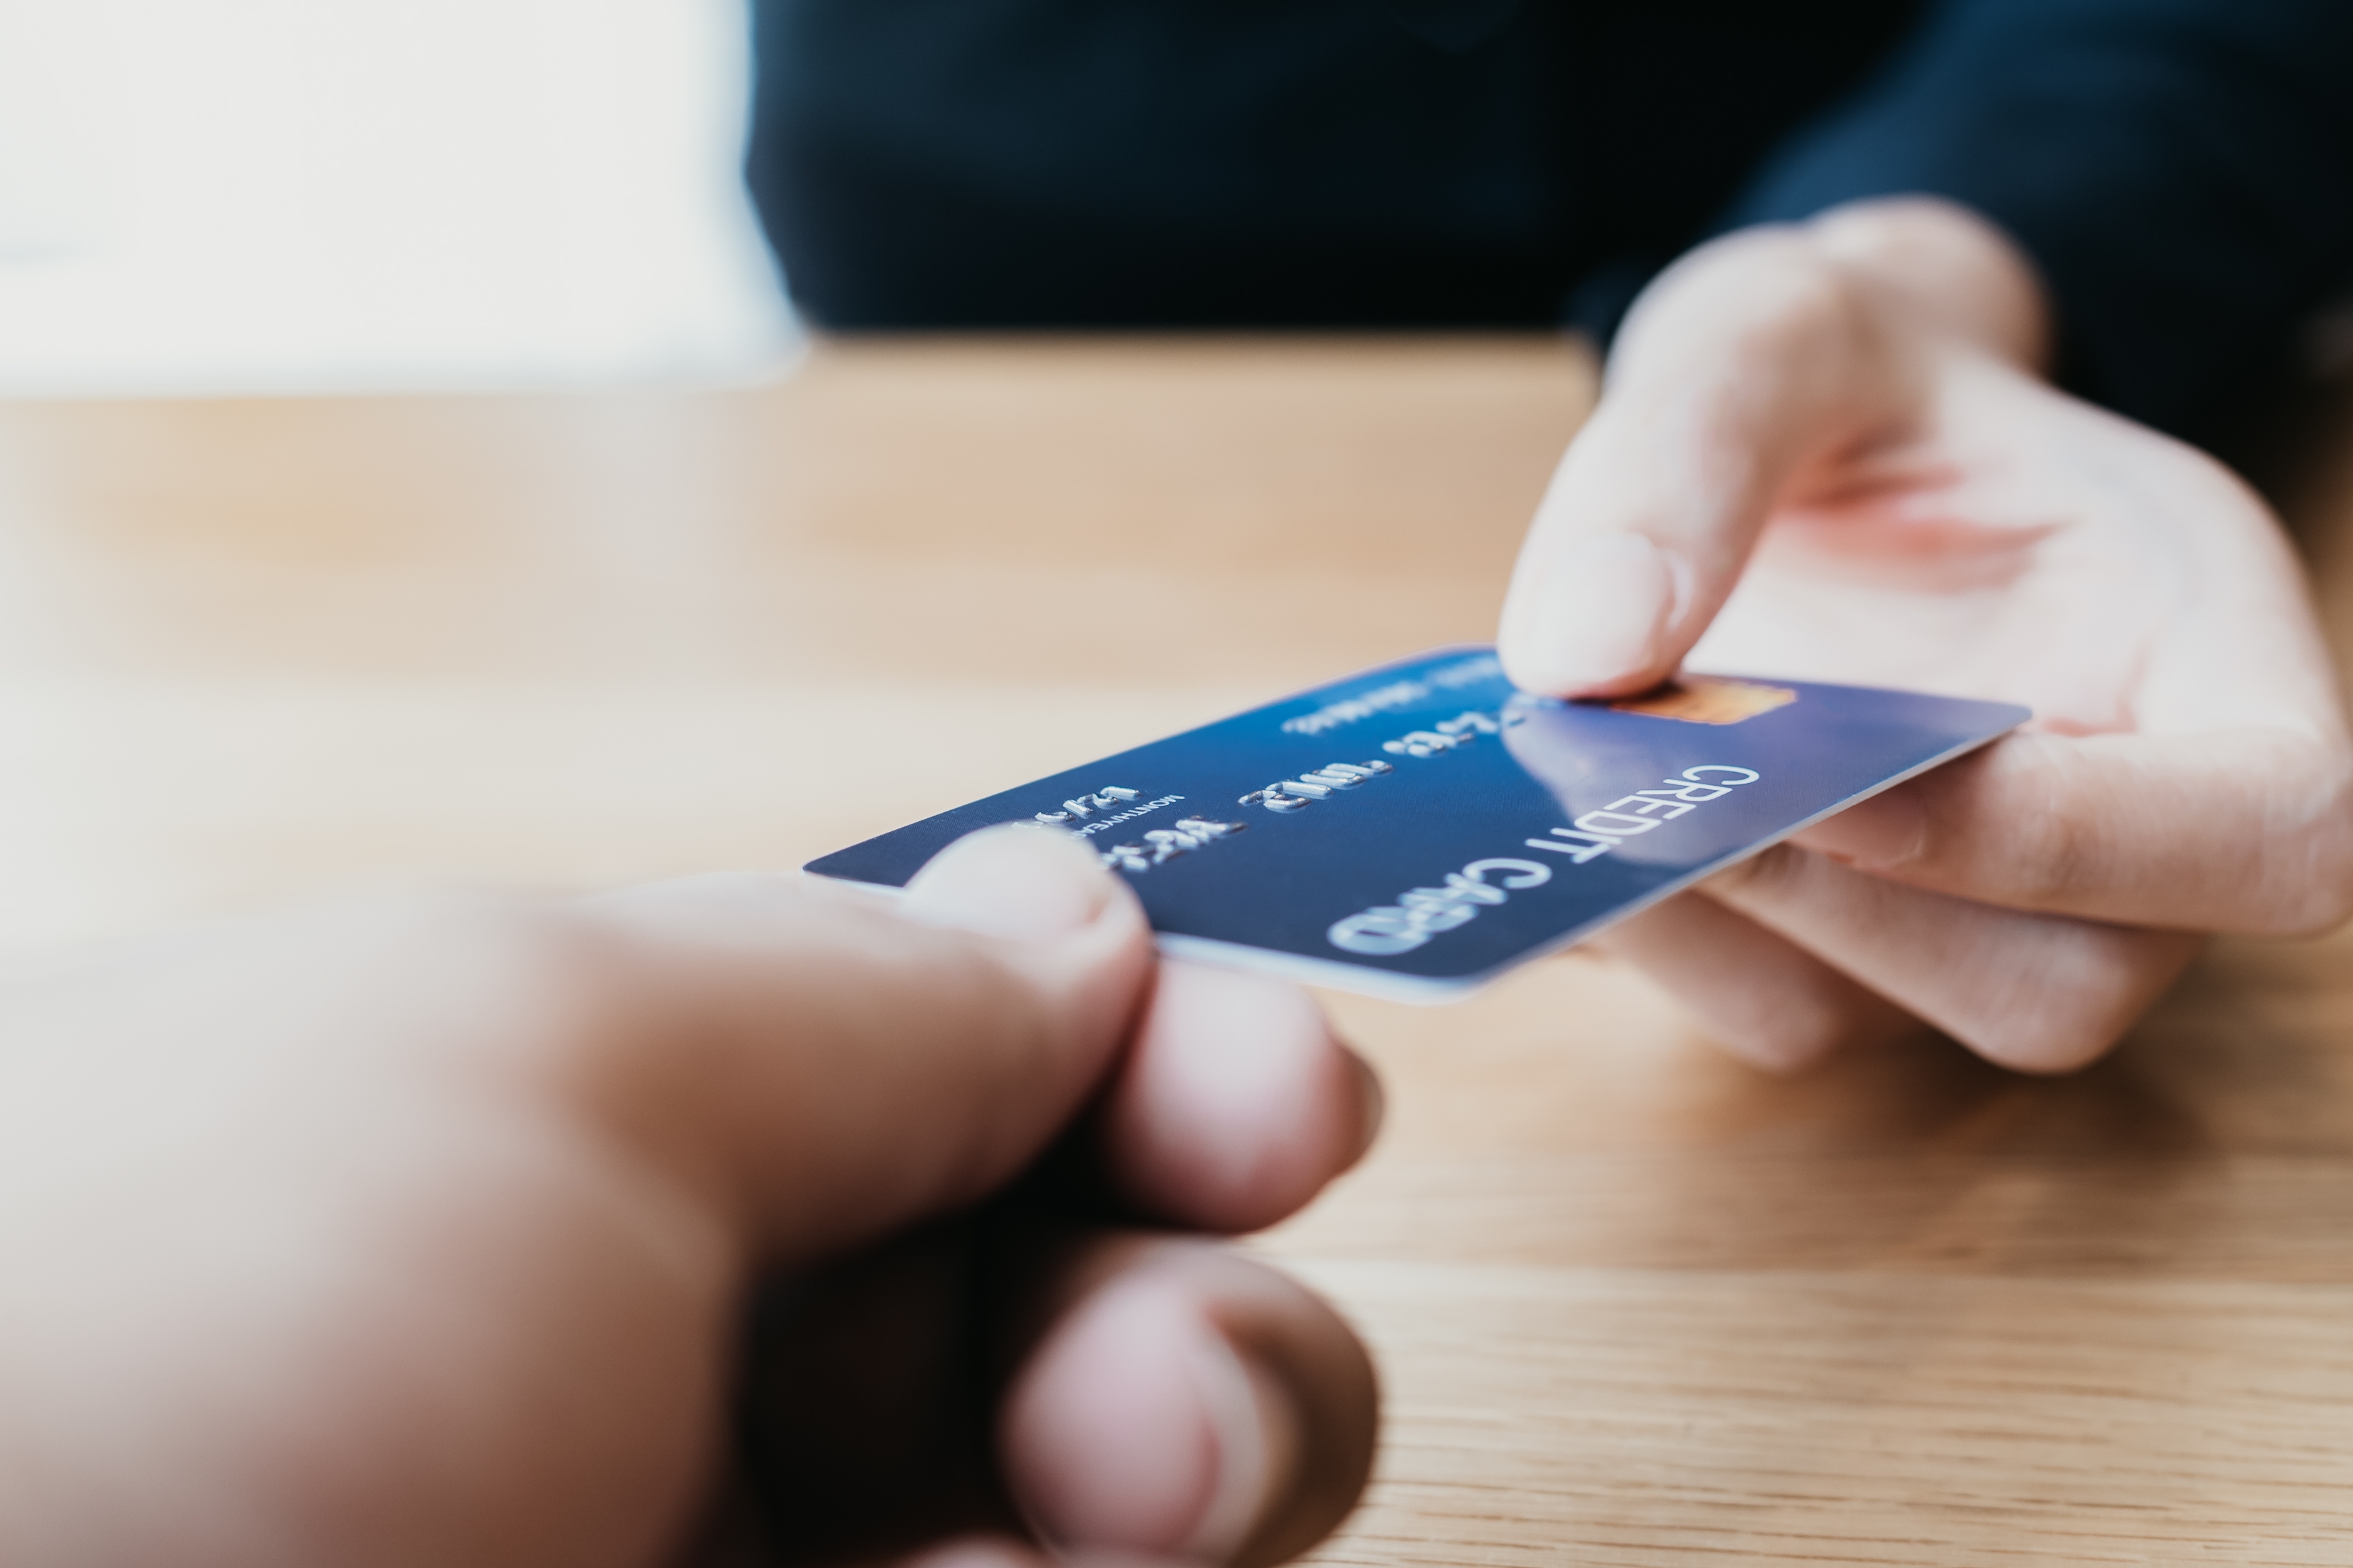 Une personne remettant une carte de crédit | Source : Shutterstock